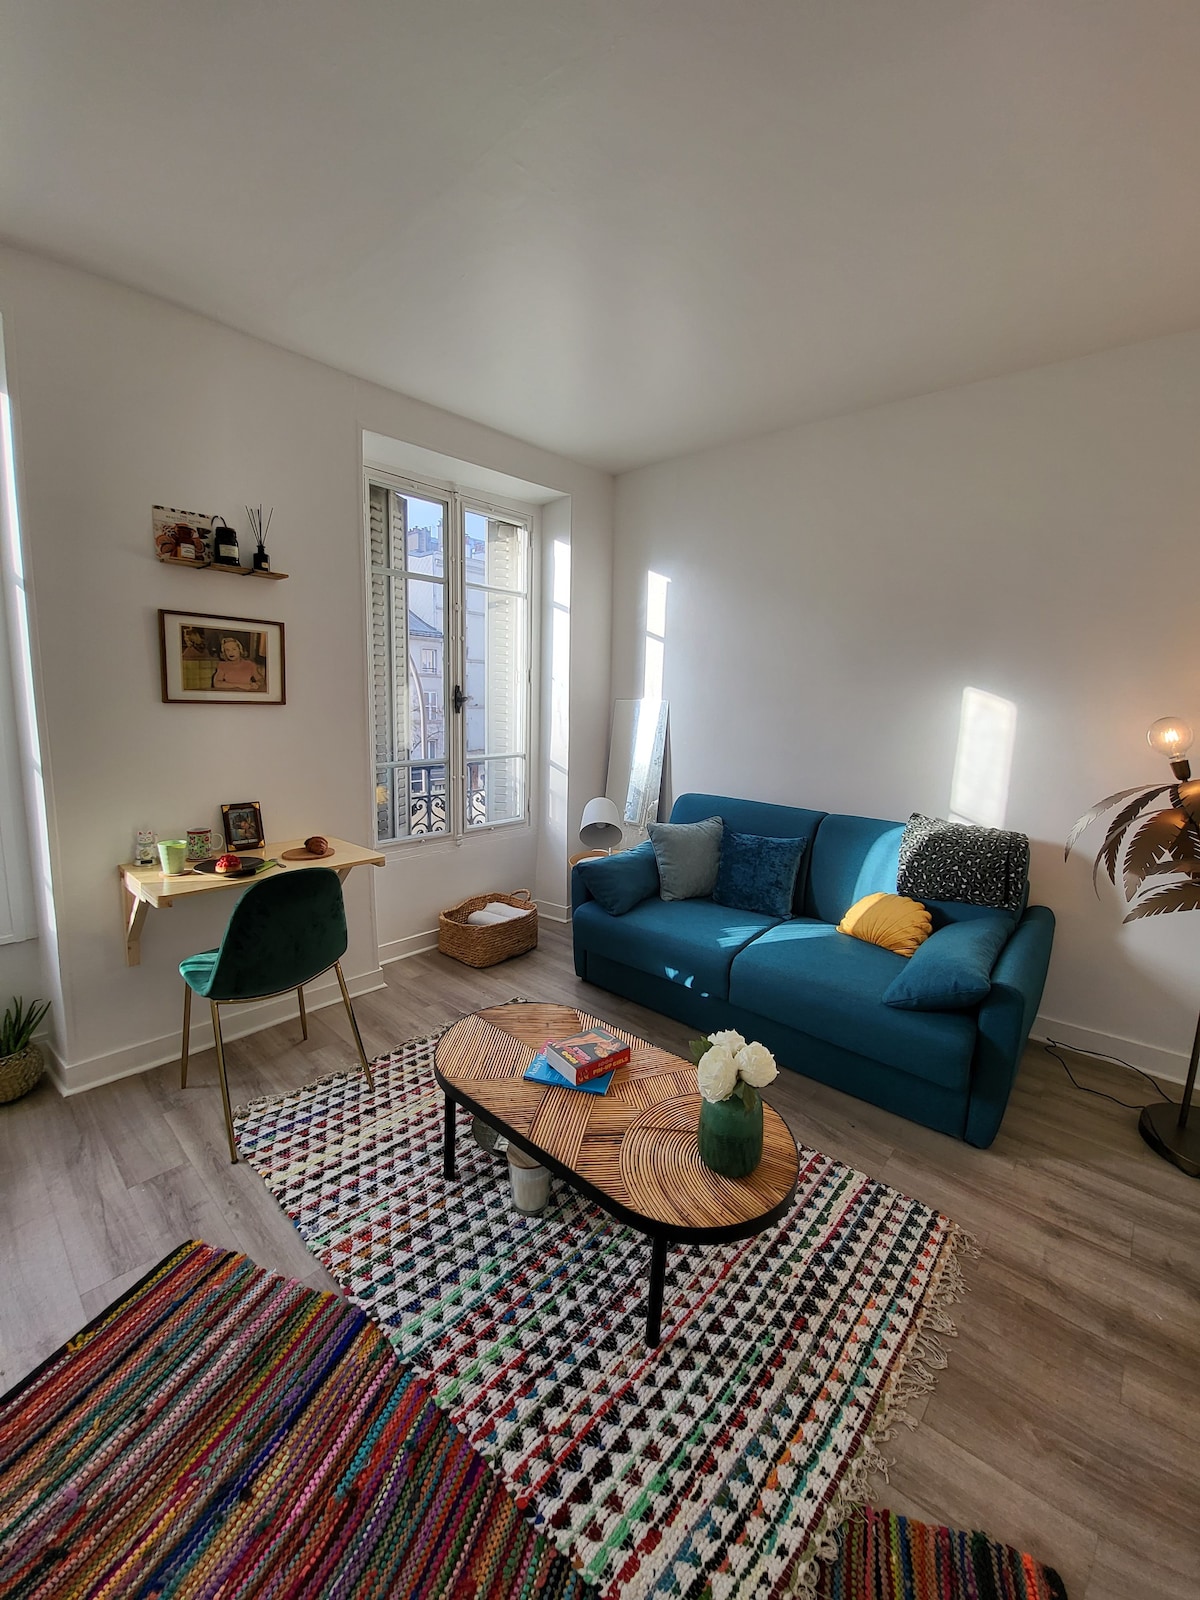 La Chapelle, Pariisi Vuokrattavat loma-asunnot ja talot - Pariisi, Ranska |  Airbnb